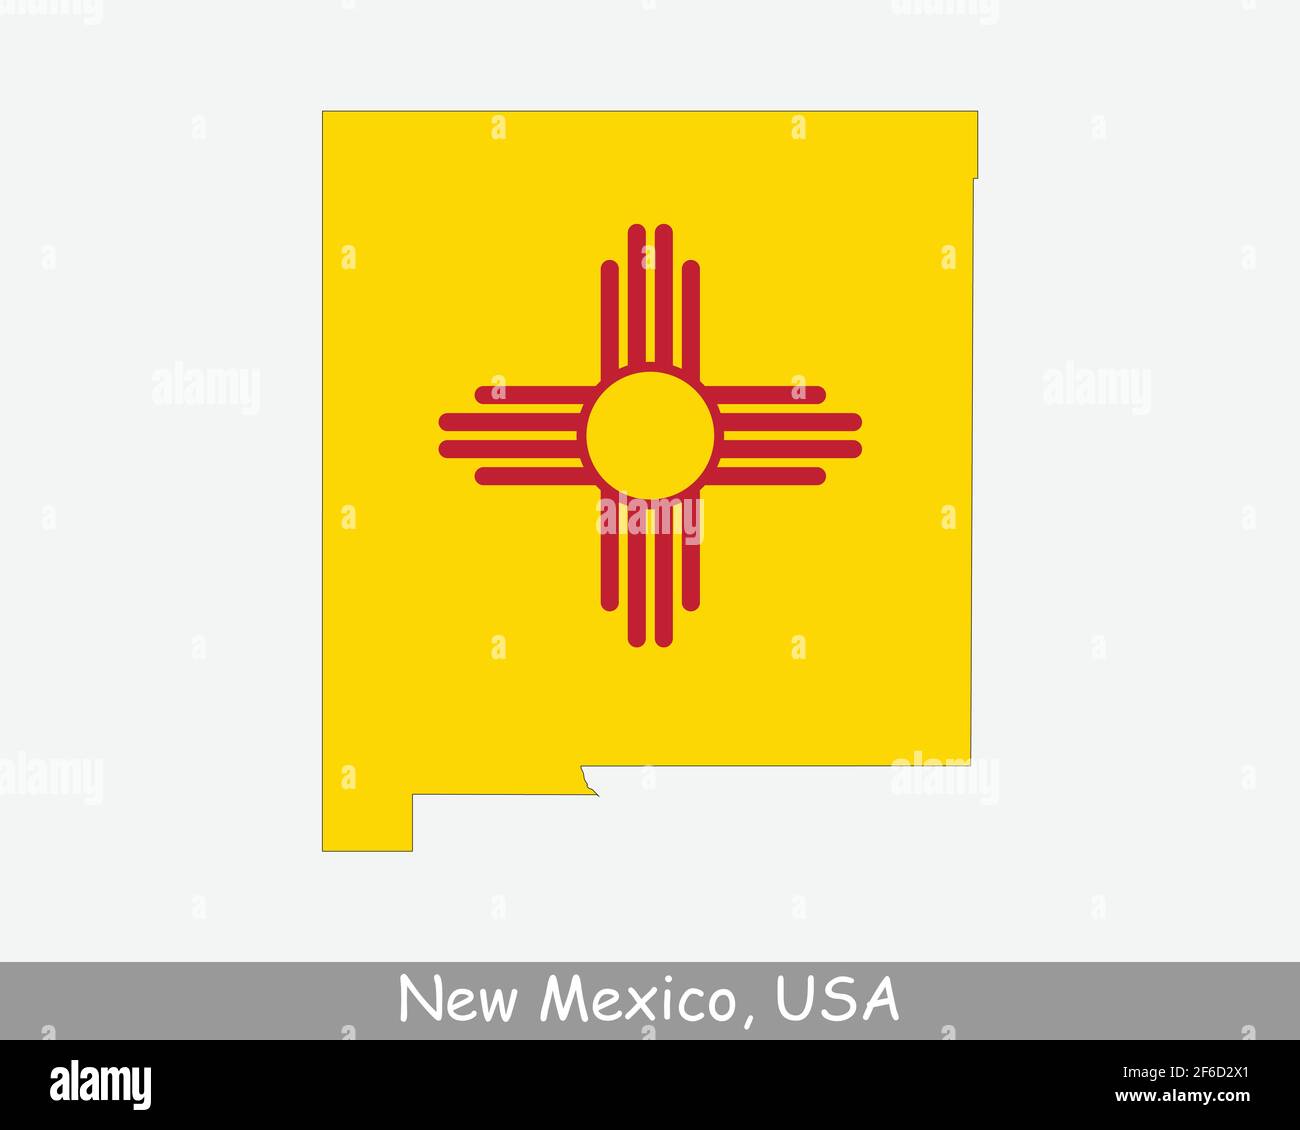 New Mexico Karte Flagge. Karte von NM, USA mit isolierter Staatsflagge auf weißem Hintergrund. Vereinigte Staaten, Amerika, Amerikaner, Vereinigte Staaten von Amerika, US S Stock Vektor